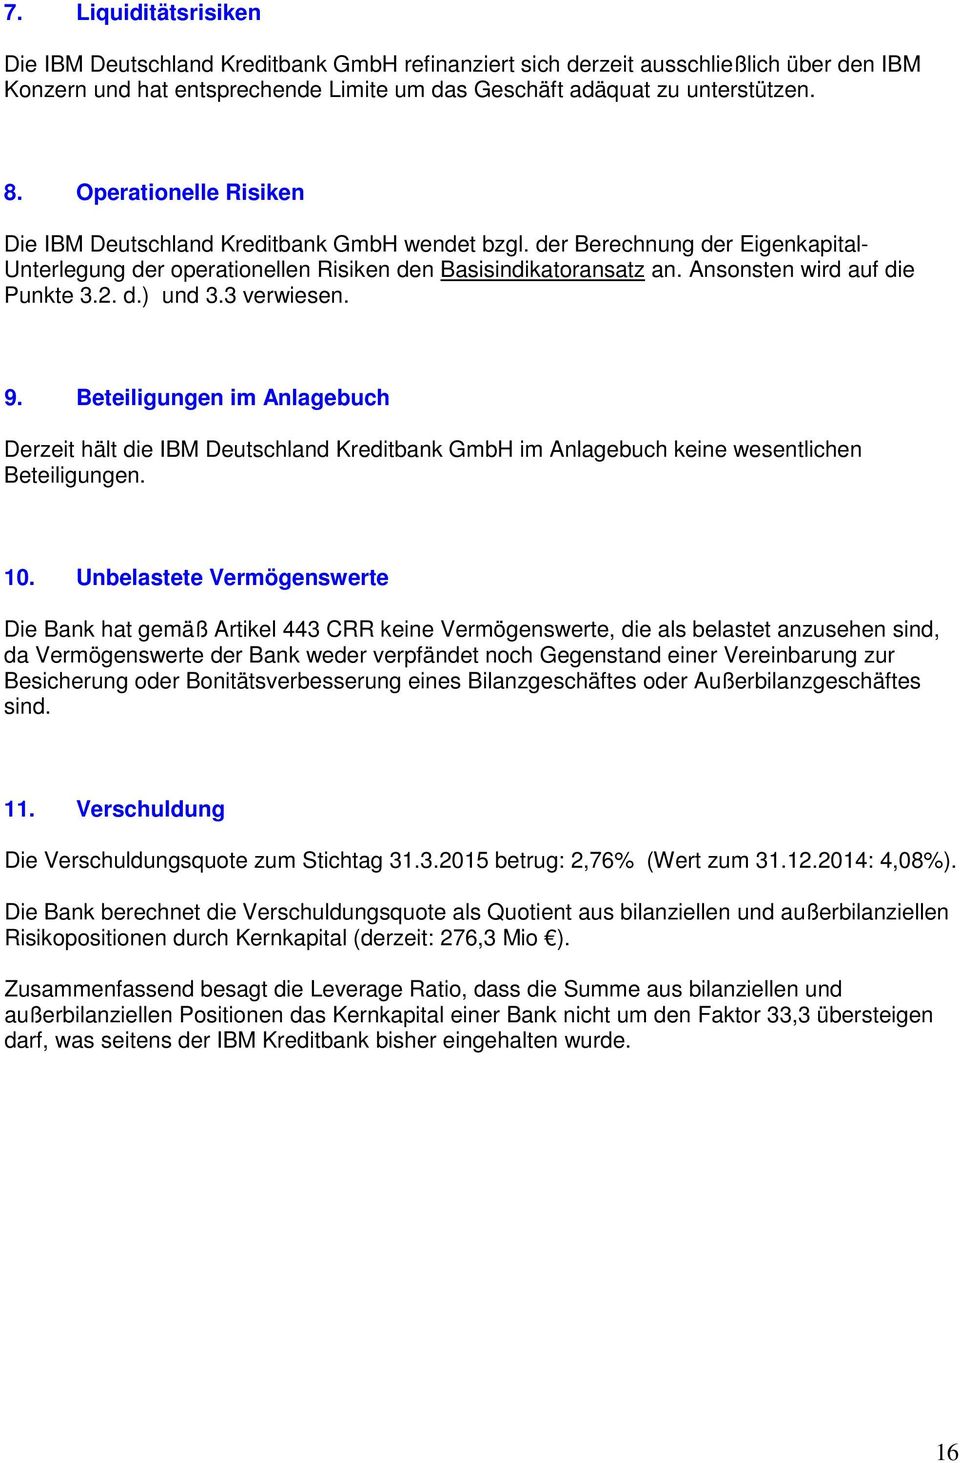 Ansonsten wird auf die Punkte 3.2. d.) und 3.3 verwiesen. 9. Beteiligungen im Anlagebuch Derzeit hält die IBM Deutschland Kreditbank GmbH im Anlagebuch keine wesentlichen Beteiligungen. 10.